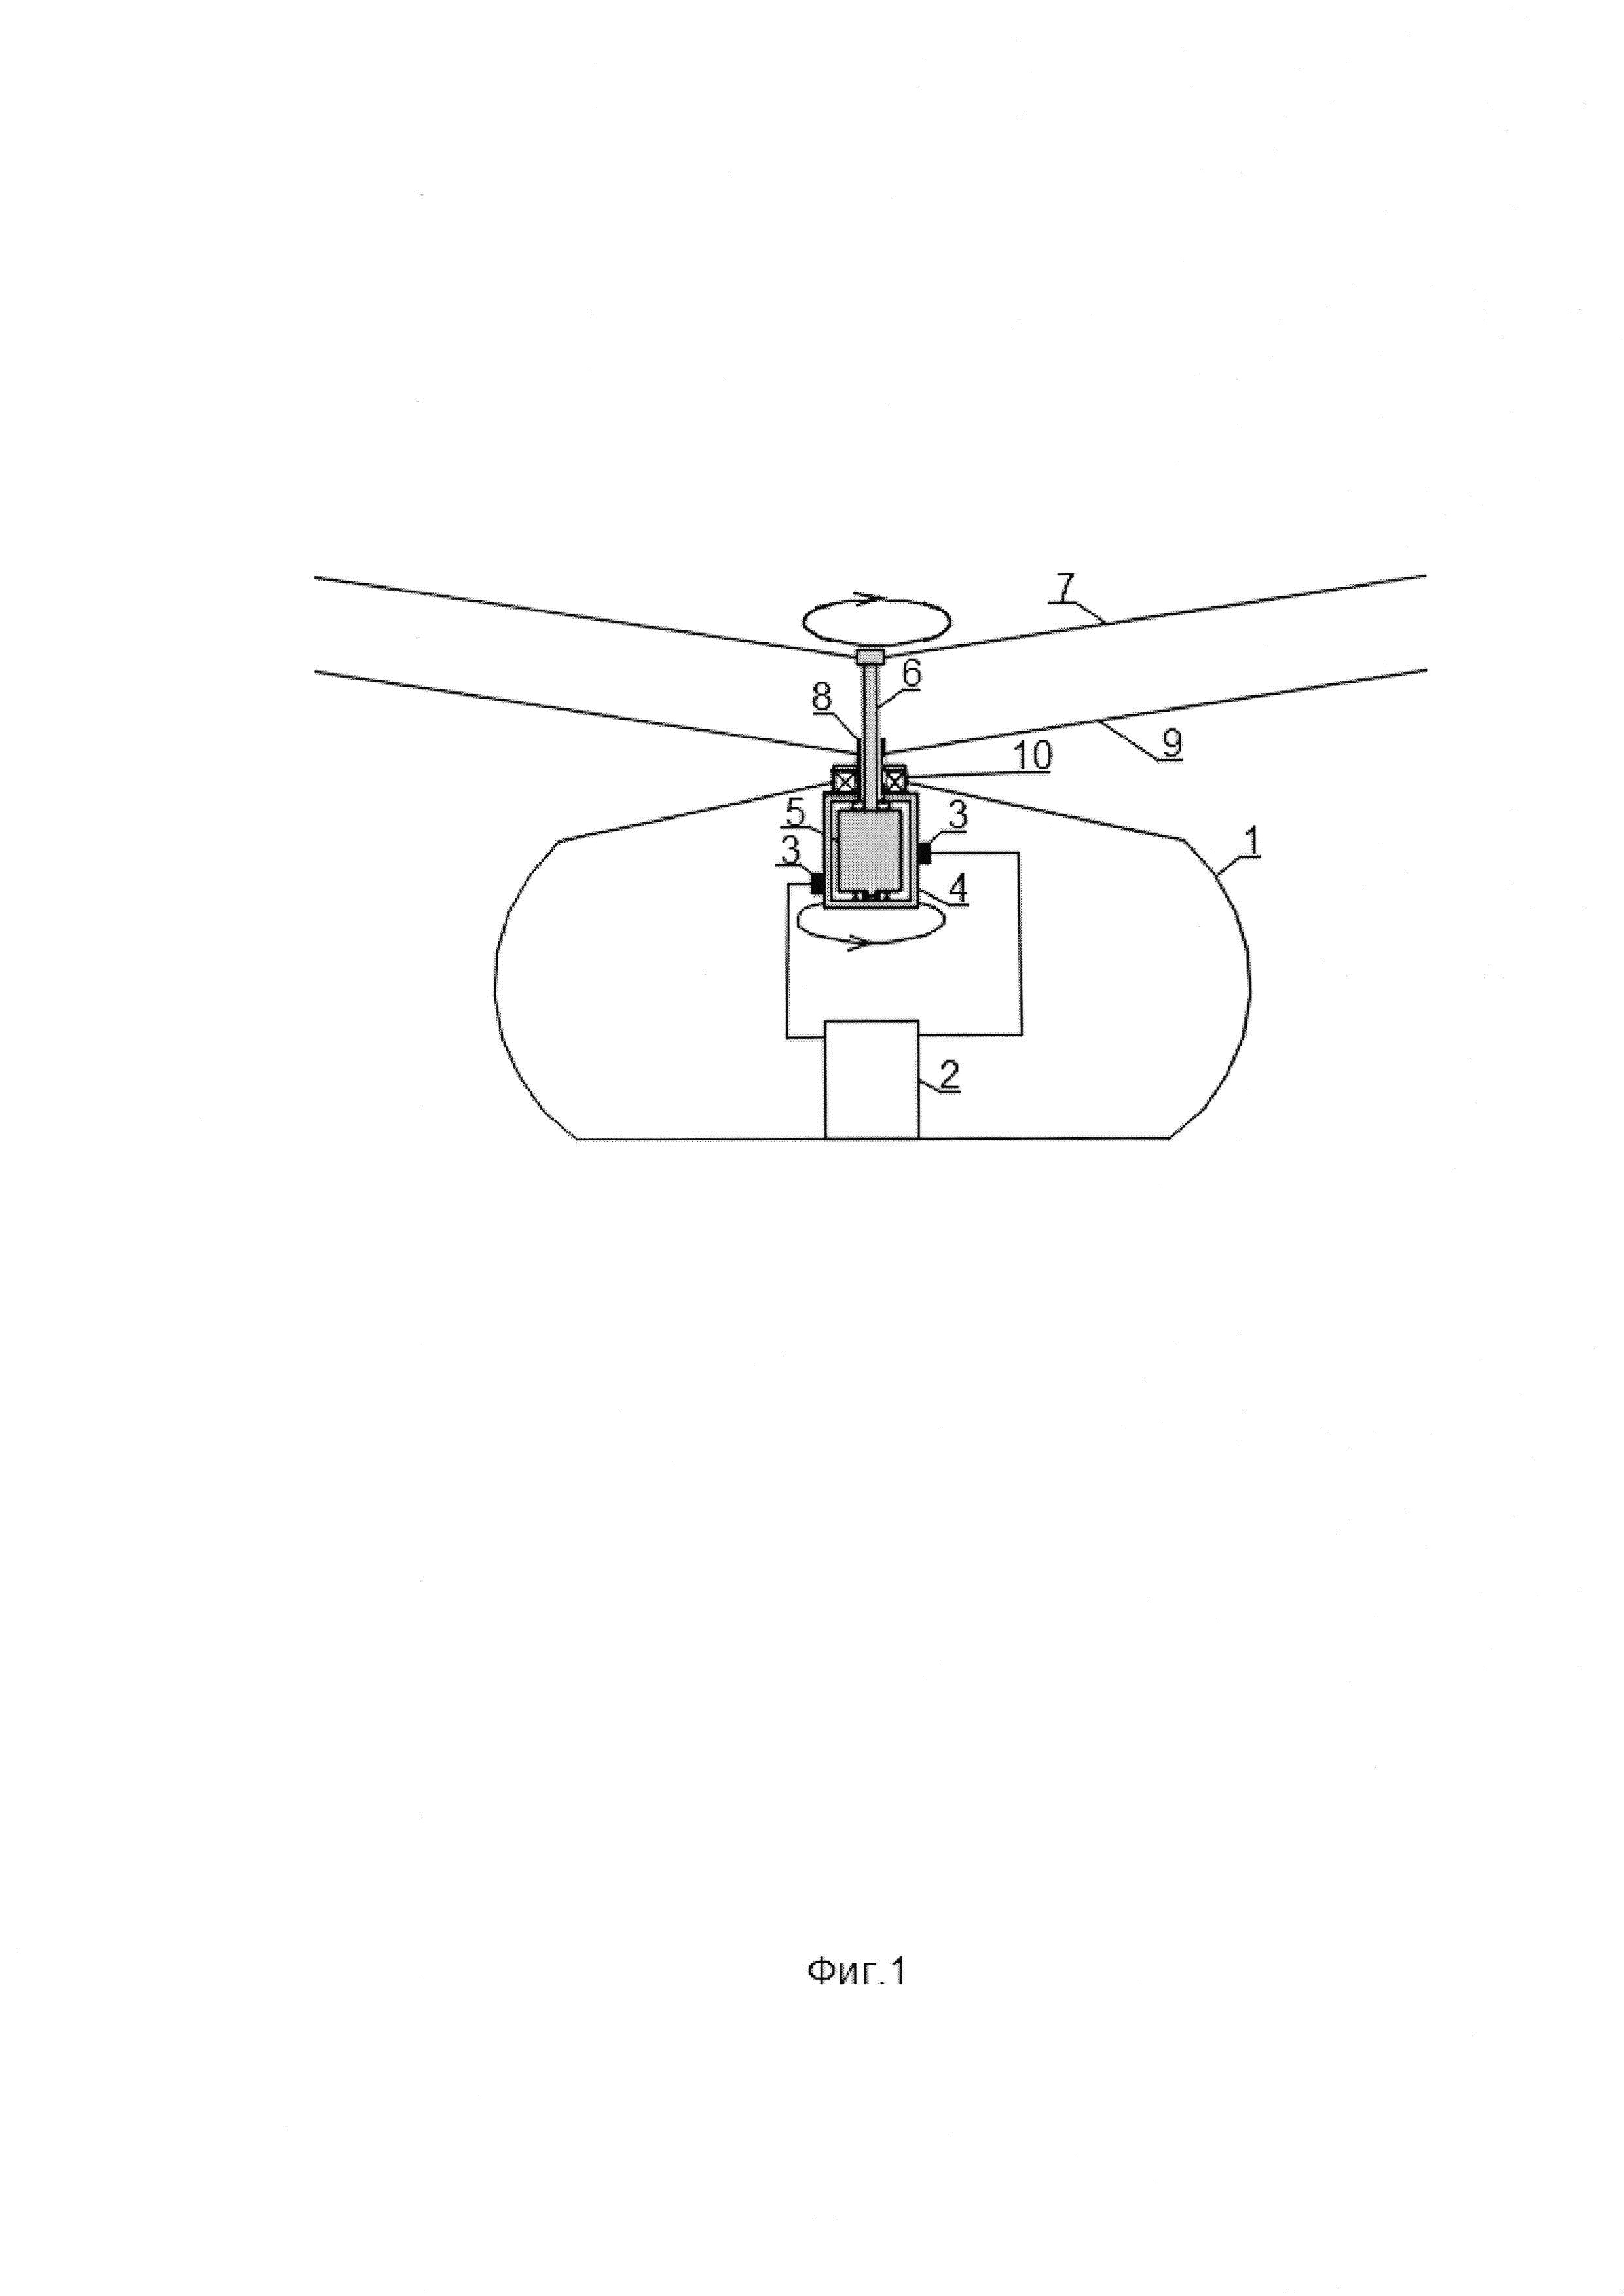 Электрический привод соосных винтов вертолета (варианты)